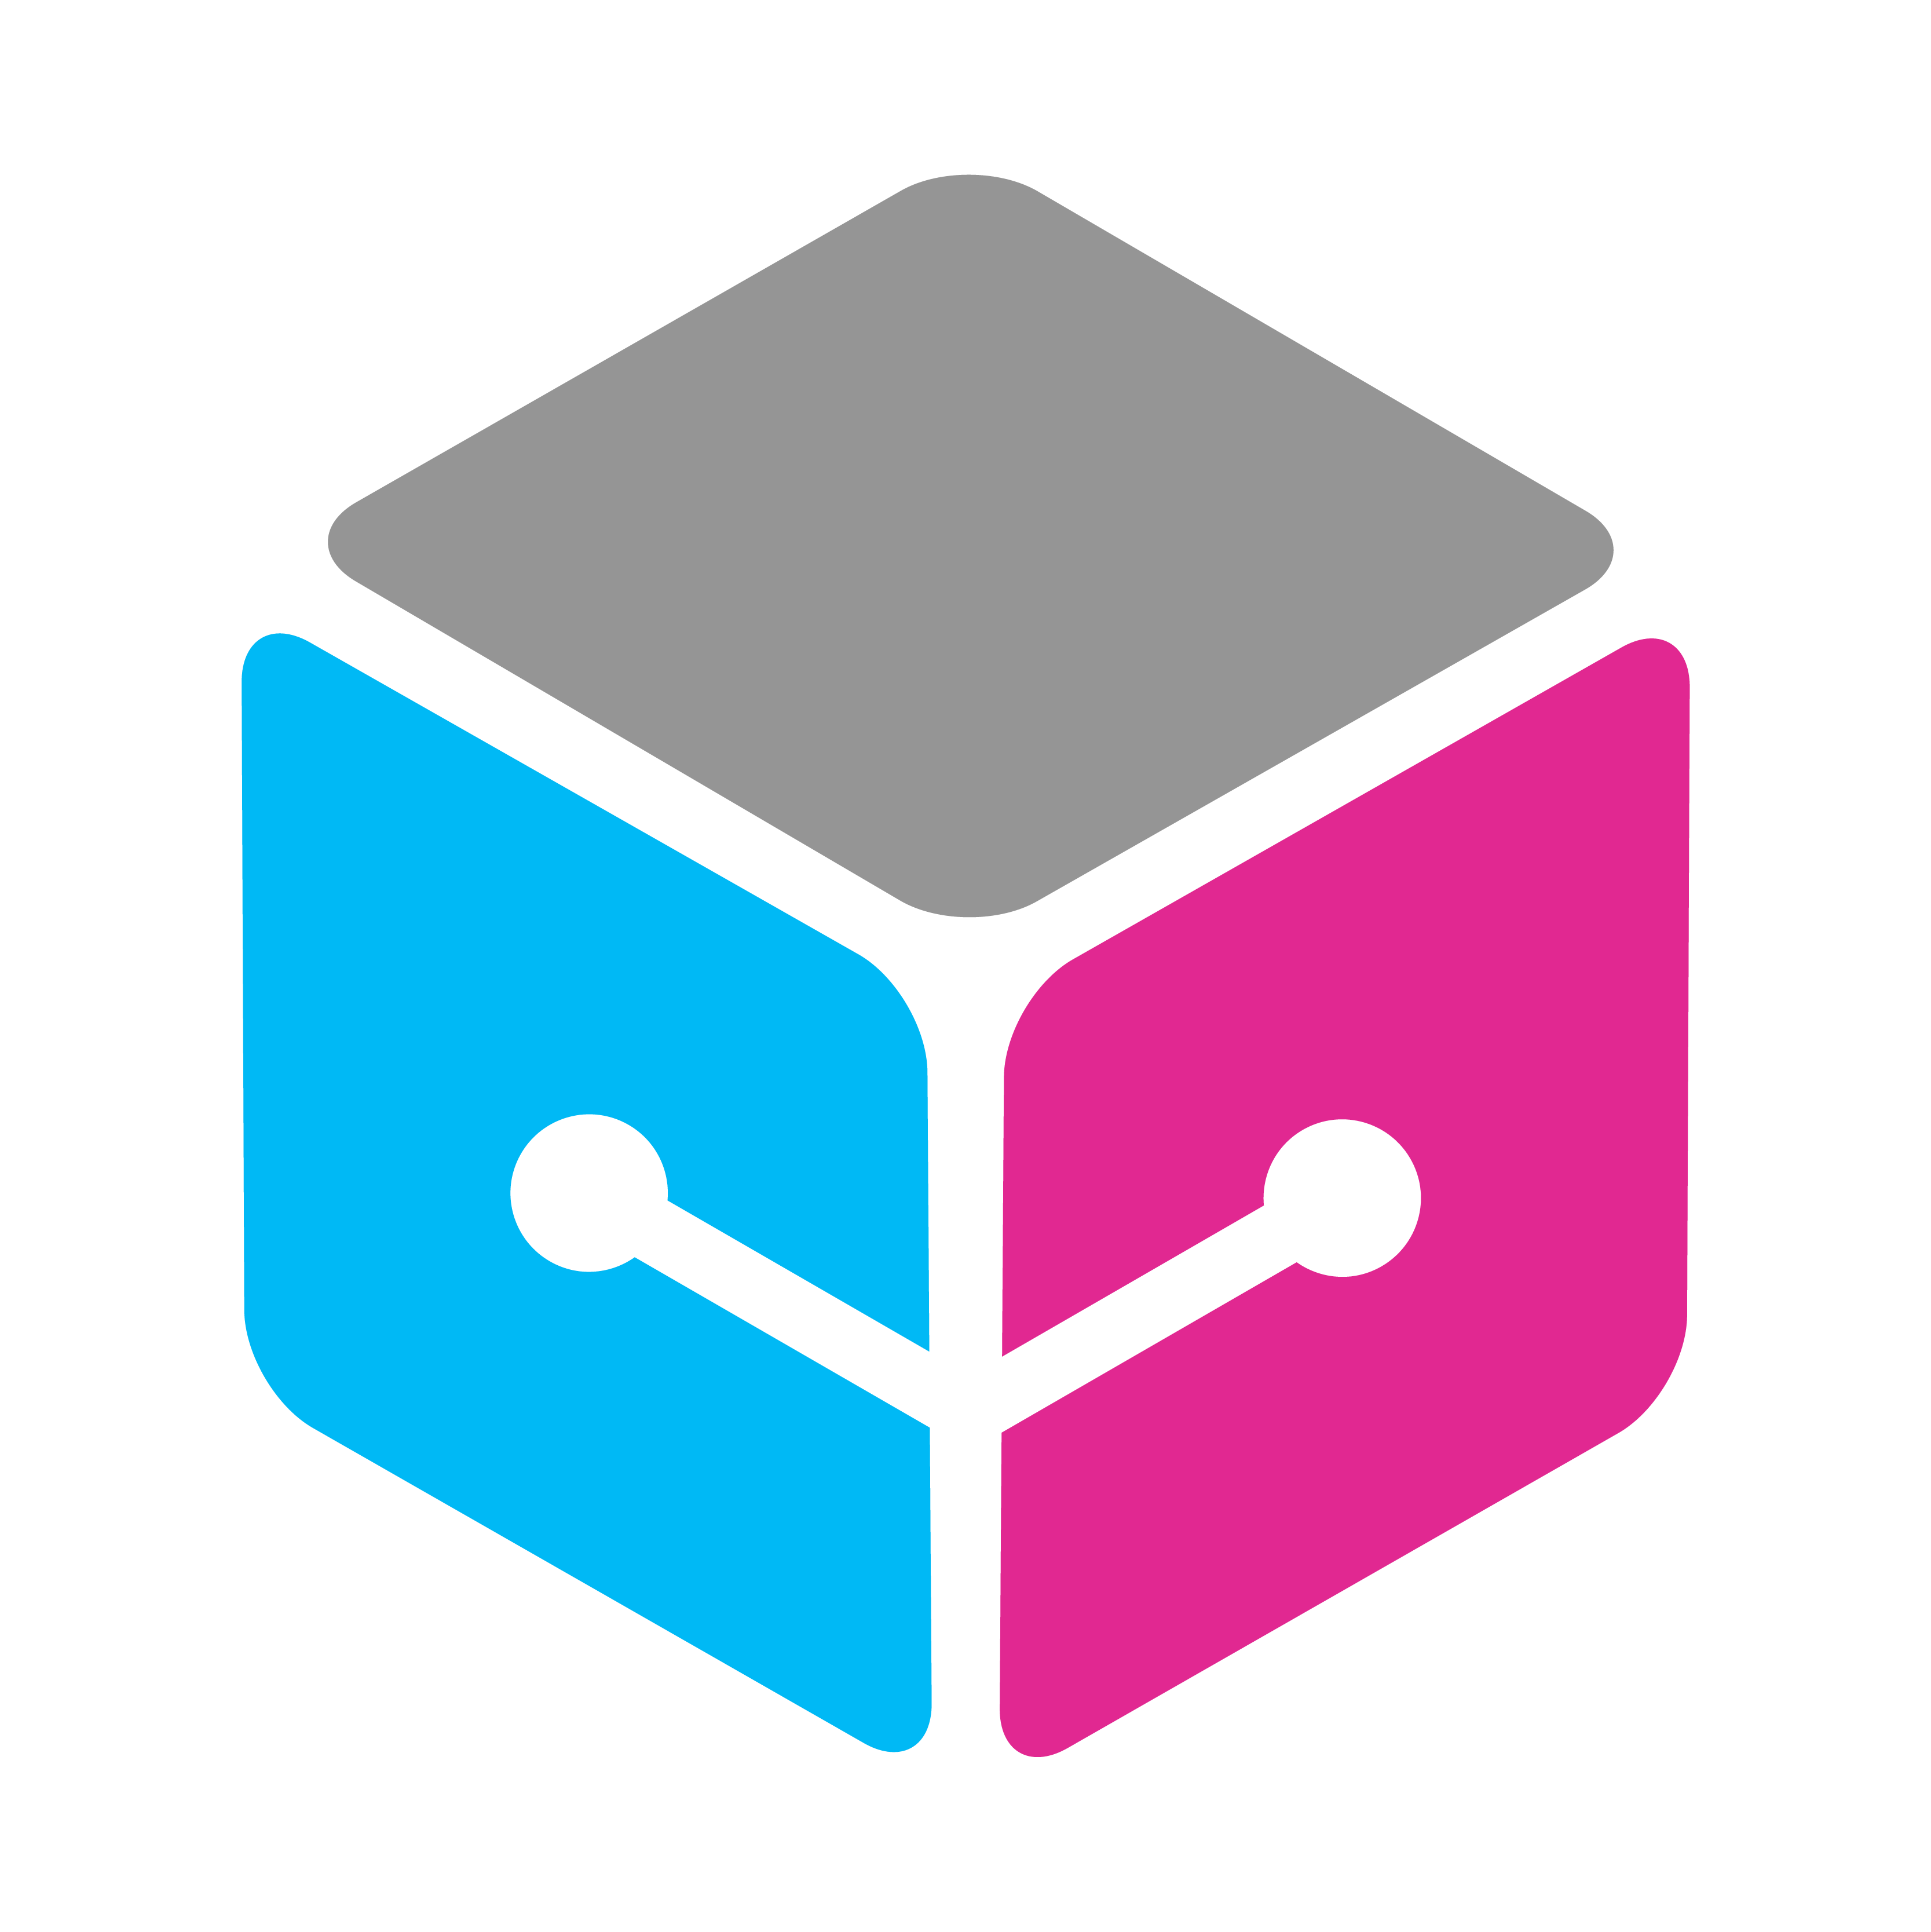 Логотип куб. Библиотека куб логотип. Куб ютуб. It куб логотип белый.